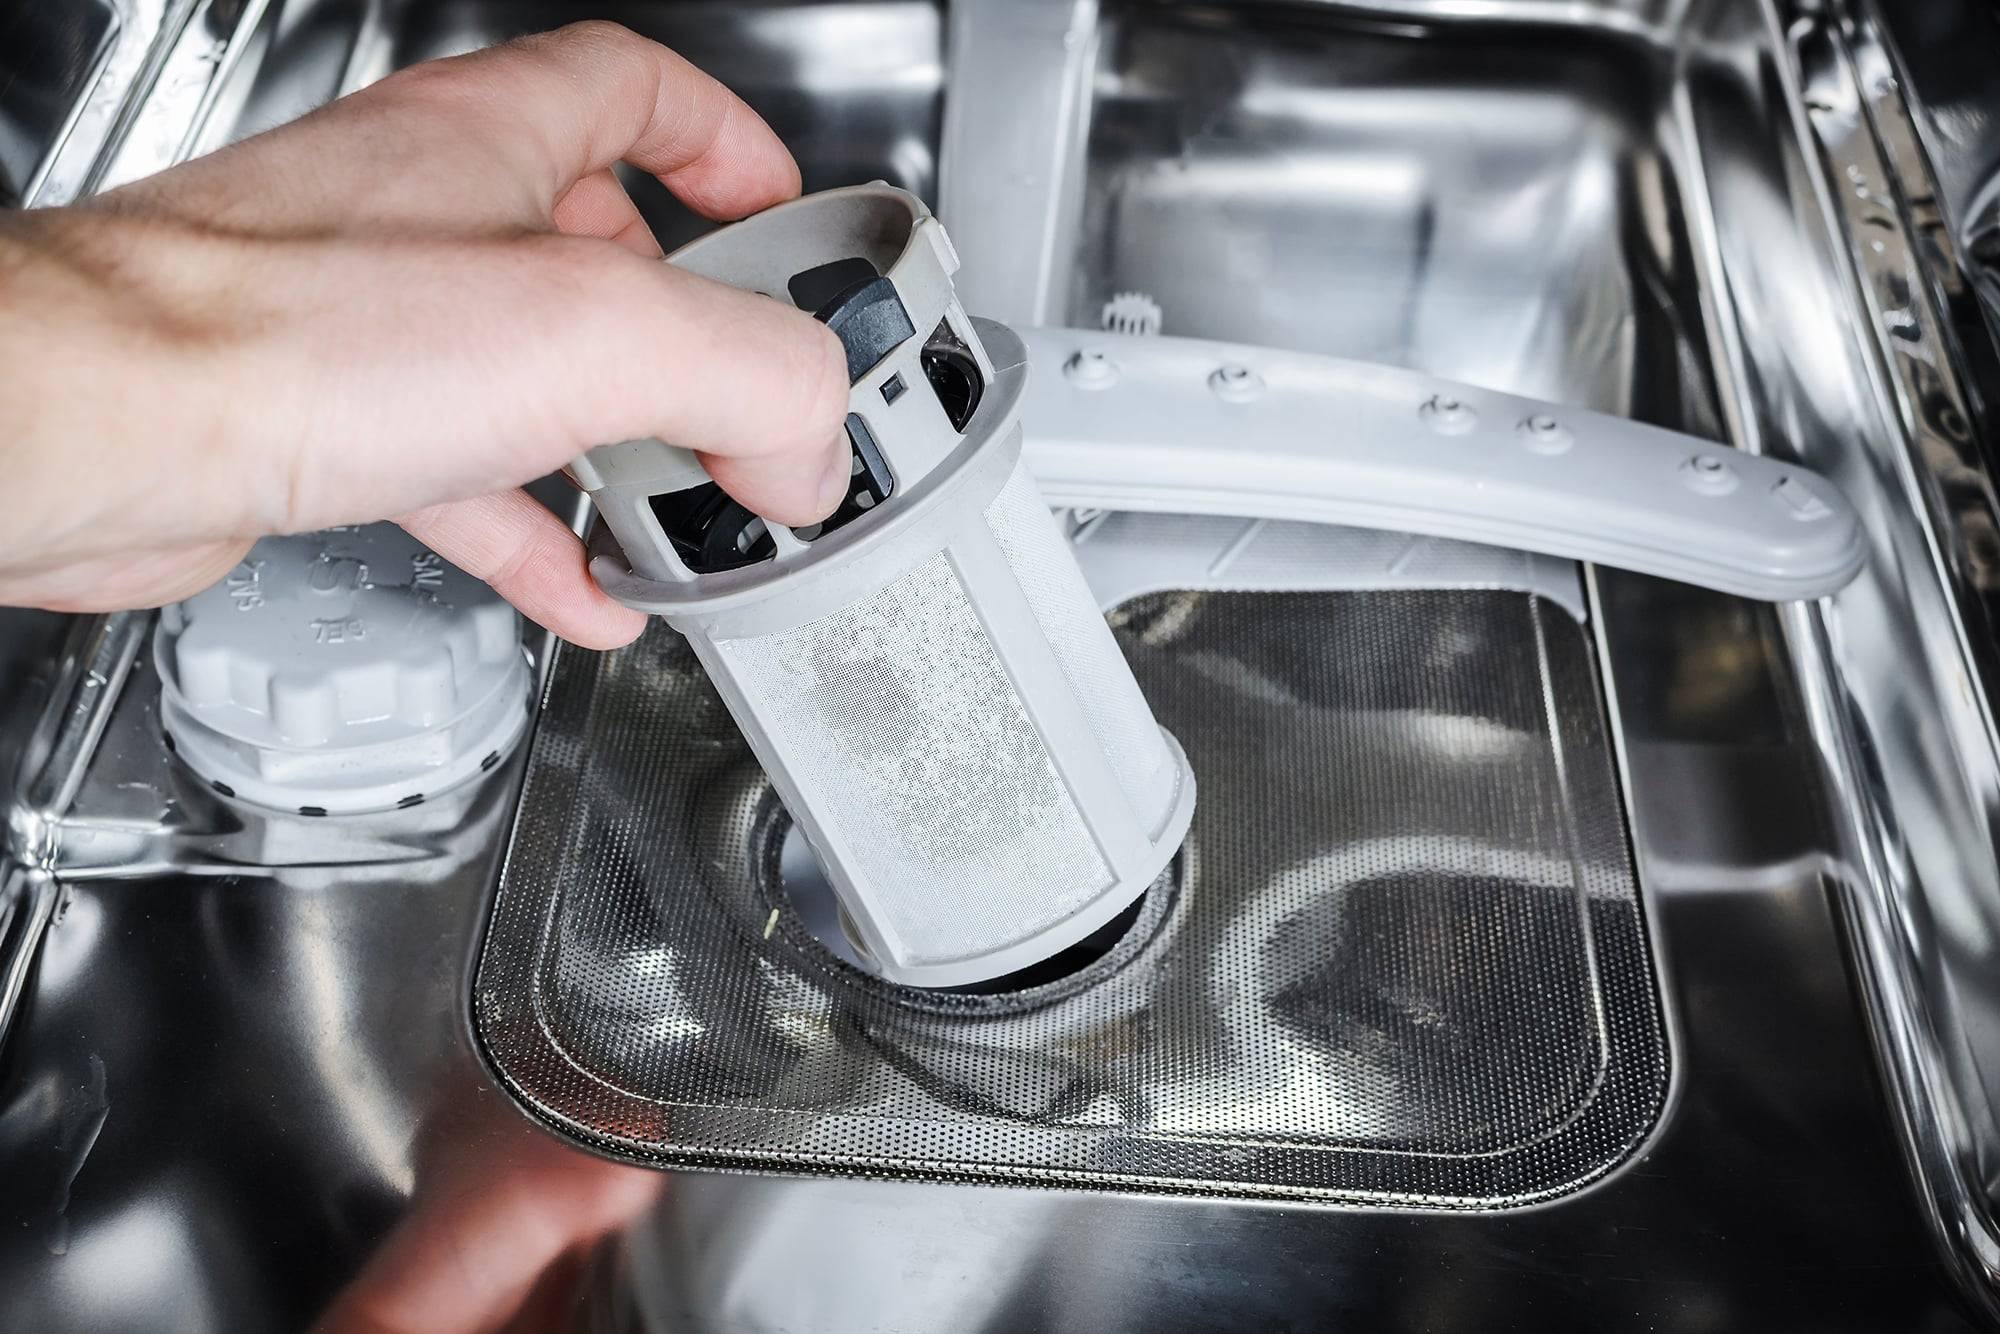 Белый налет в посудомоечной машине: почему появляется + как устранить